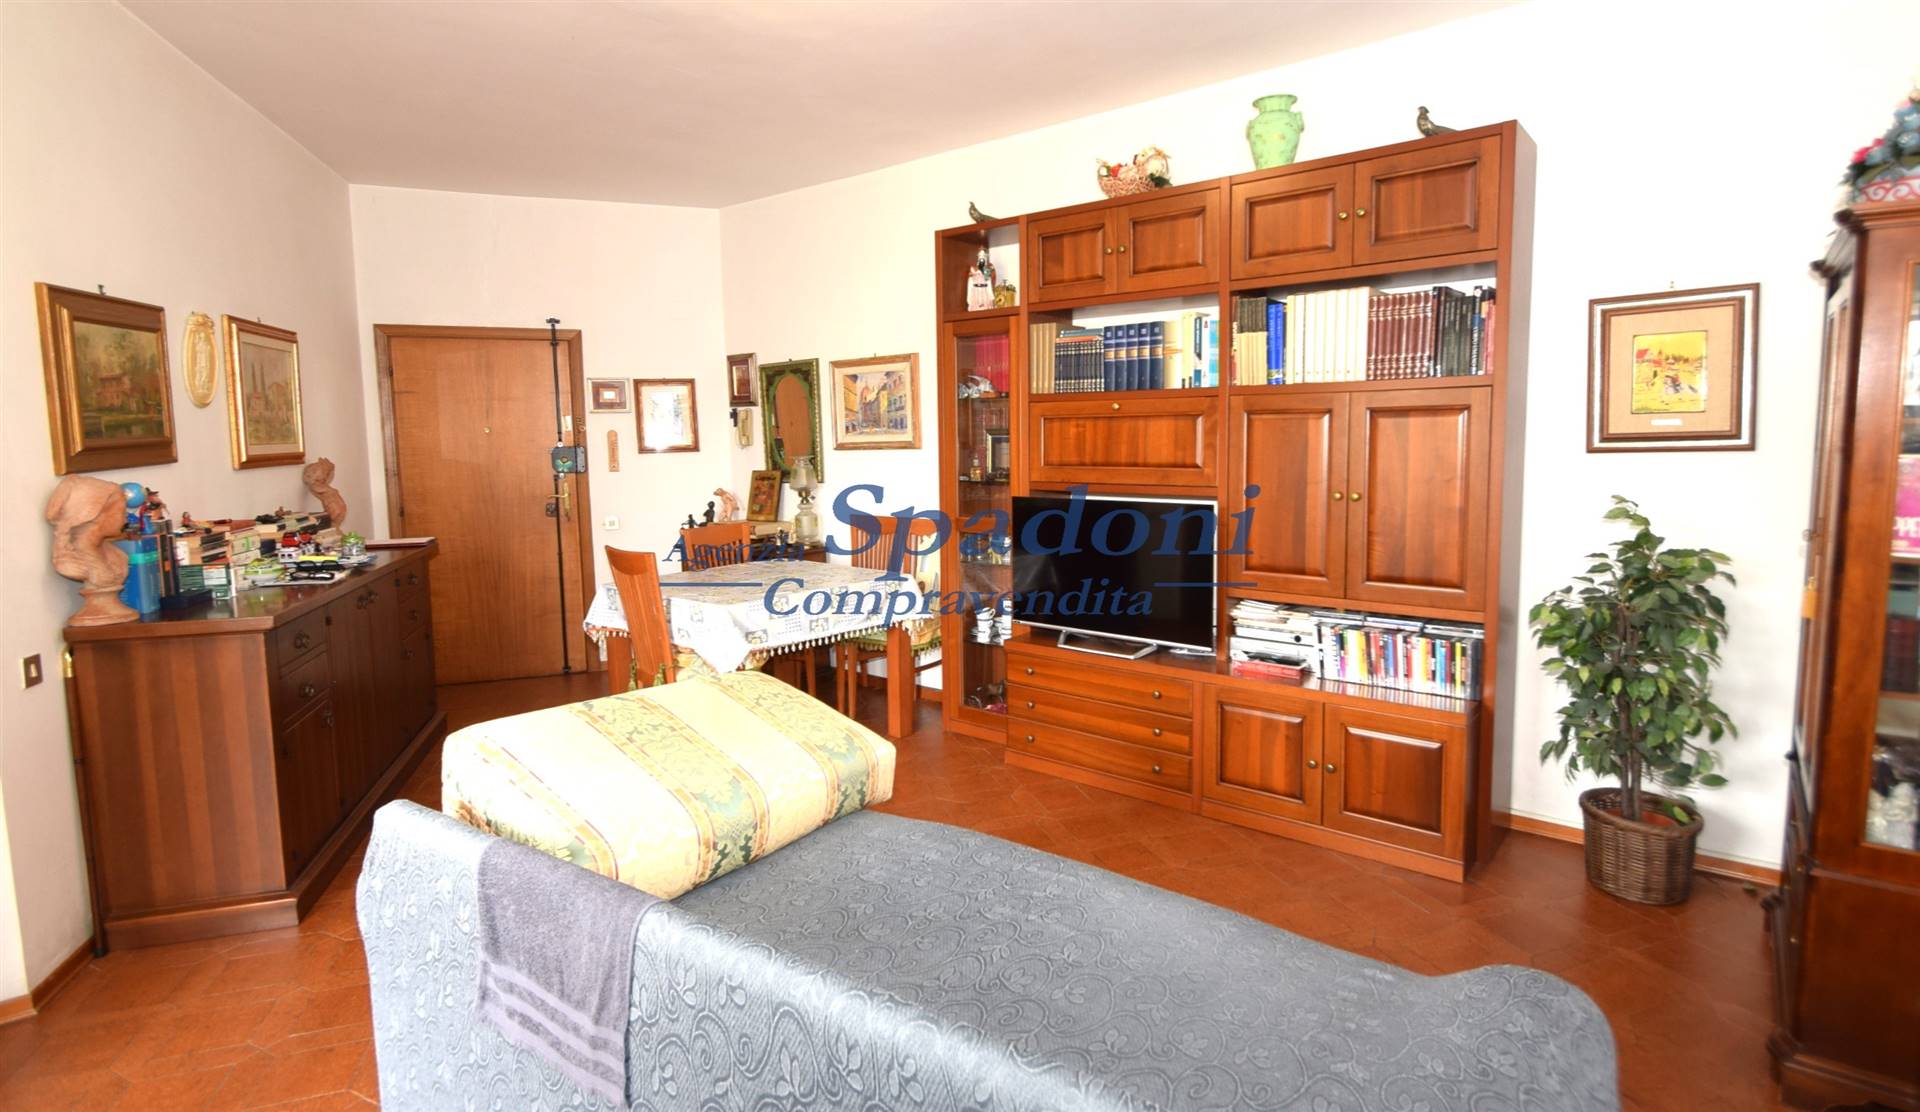 Appartamento in vendita a Montecatini-Terme, 4 locali, prezzo € 80.000 | PortaleAgenzieImmobiliari.it